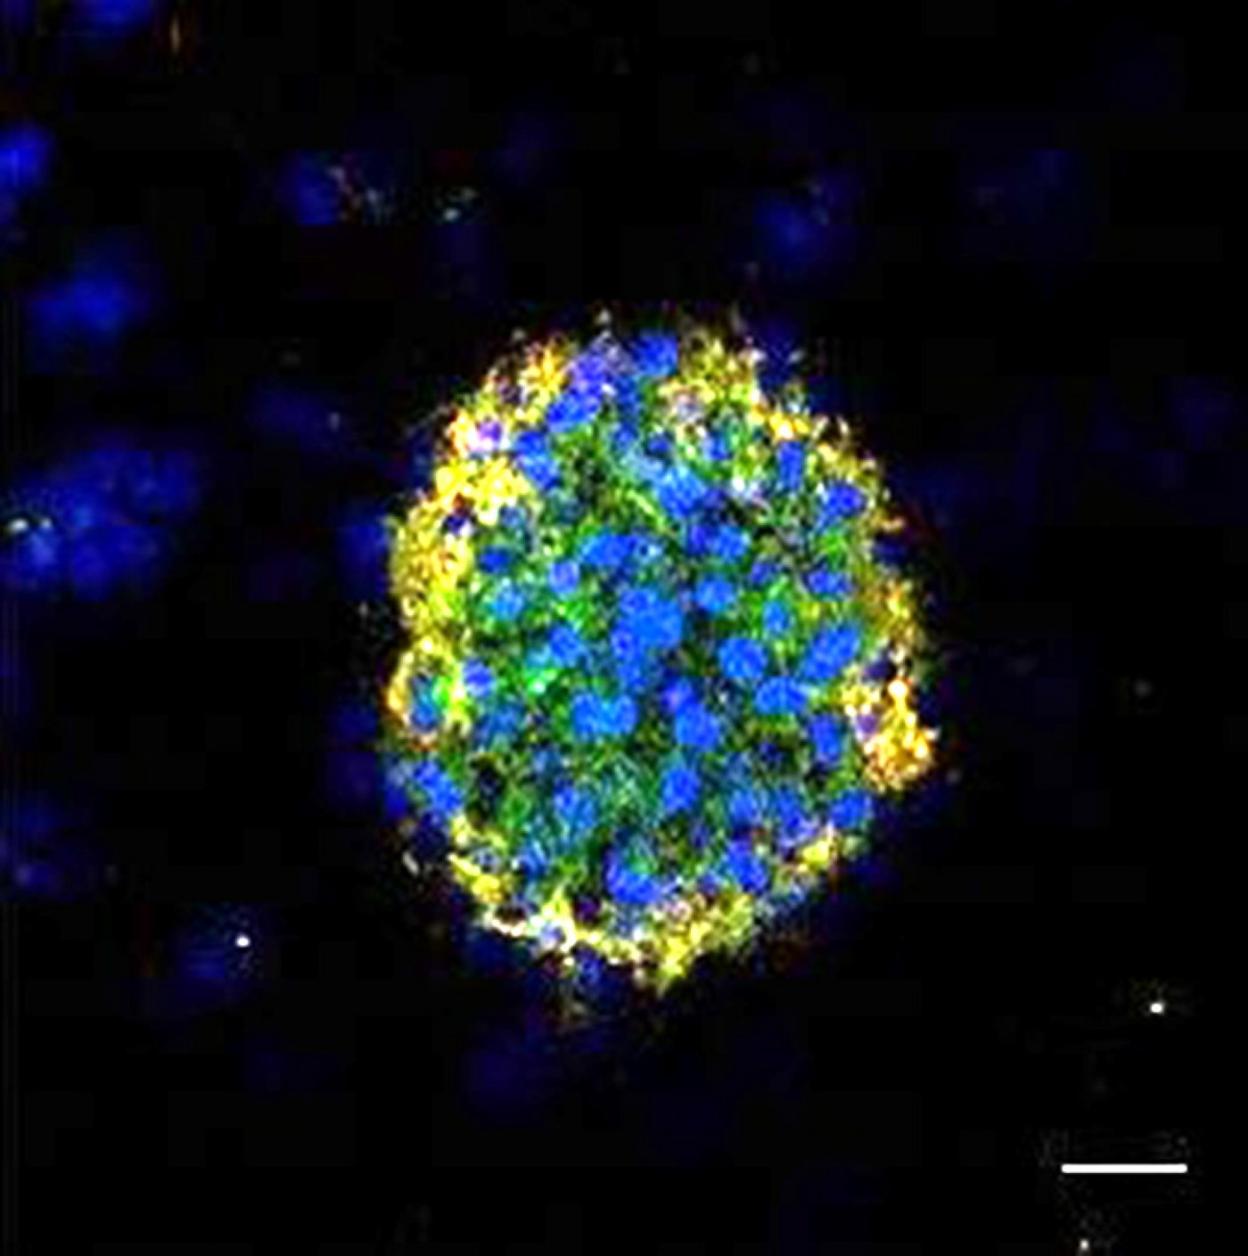 Copias de tumores de mama metastásicos, generadas a partir de células 'pescadas' en la sangre (en azul y verde), acompañadas de algunas células sanguíneas (en rojo). Begoña Hurtado / CNIO